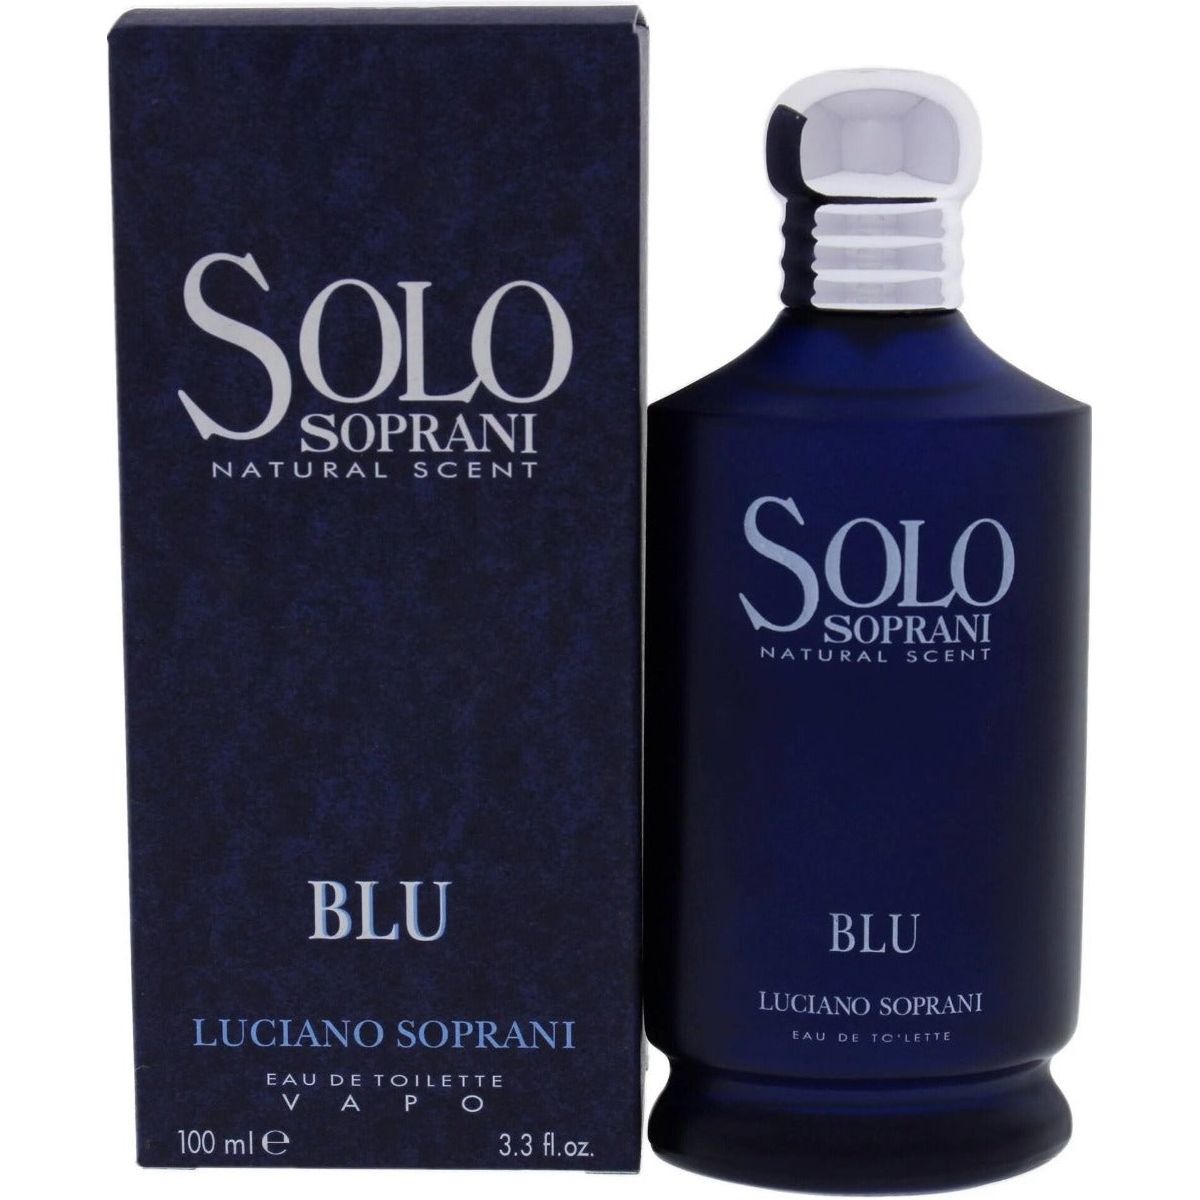 Blu Pour Homme Cologne for Men Eau De Toilette Natural Spray Masculine  Scent, 3.4 Fl Oz 